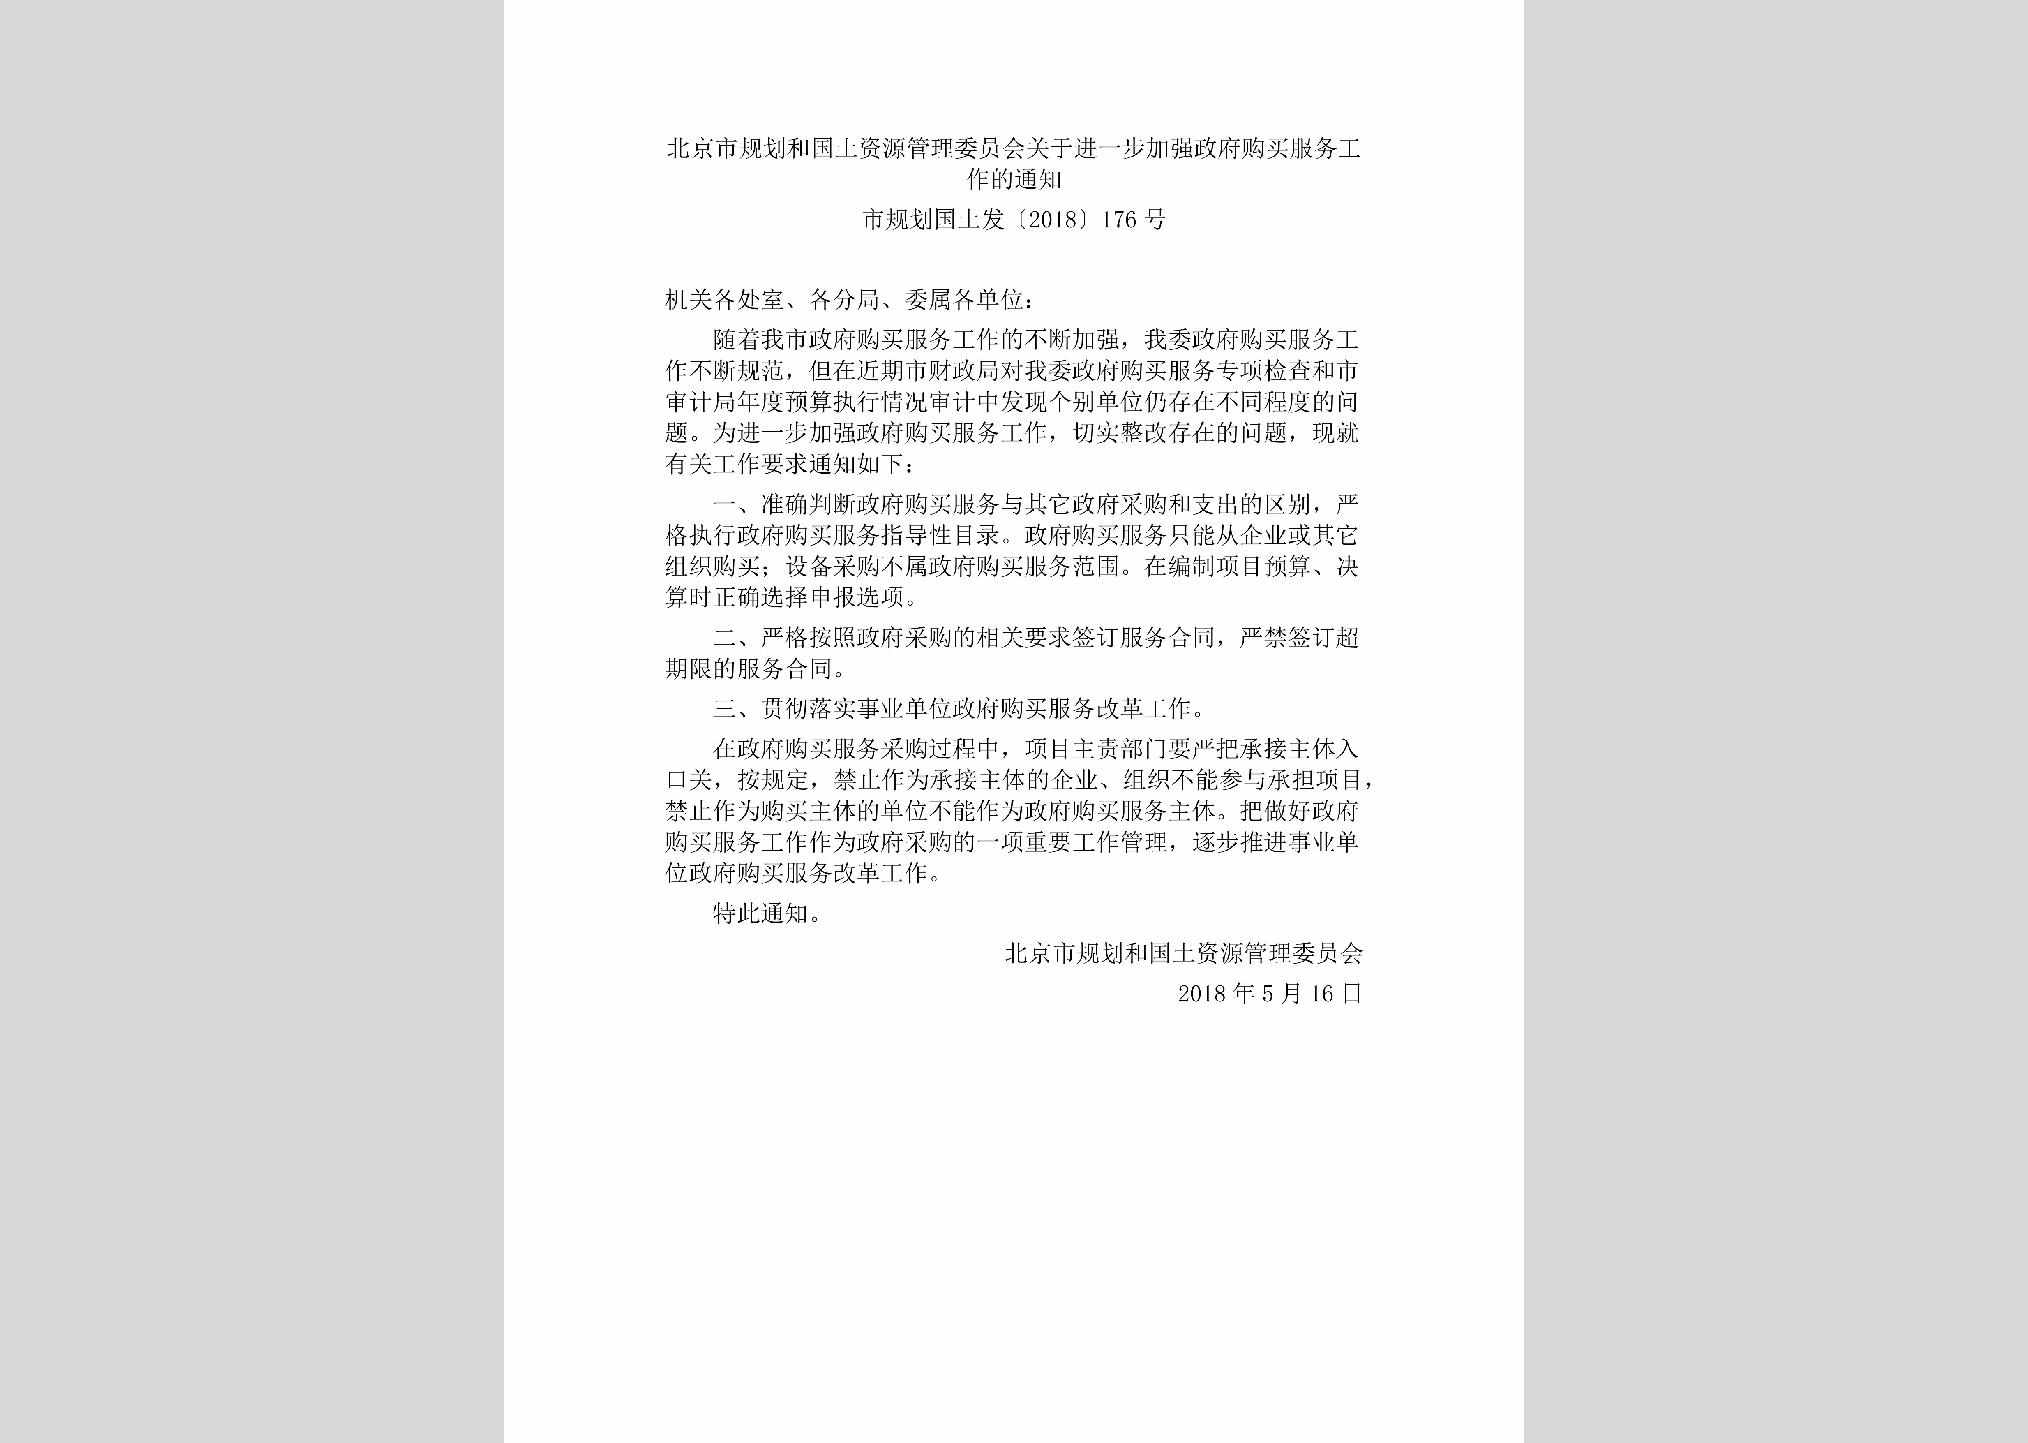 市规划国土发[2018]176号：北京市规划和国土资源管理委员会关于进一步加强政府购买服务工作的通知